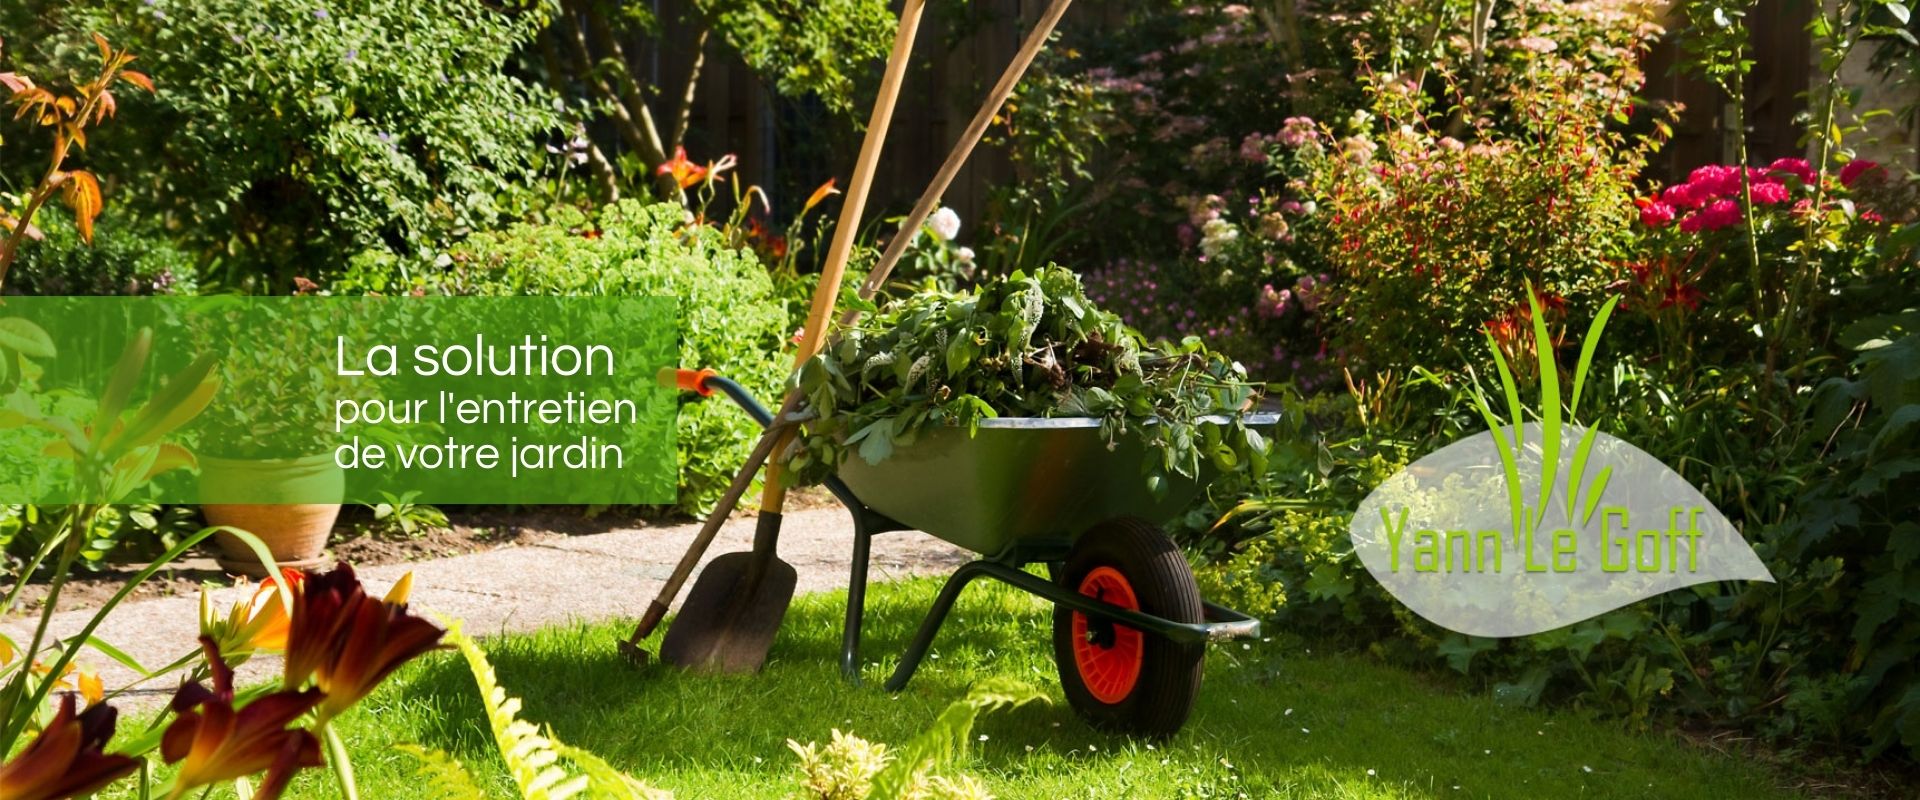 La solution pour l'entretien de votre jardin, Débroussaillage